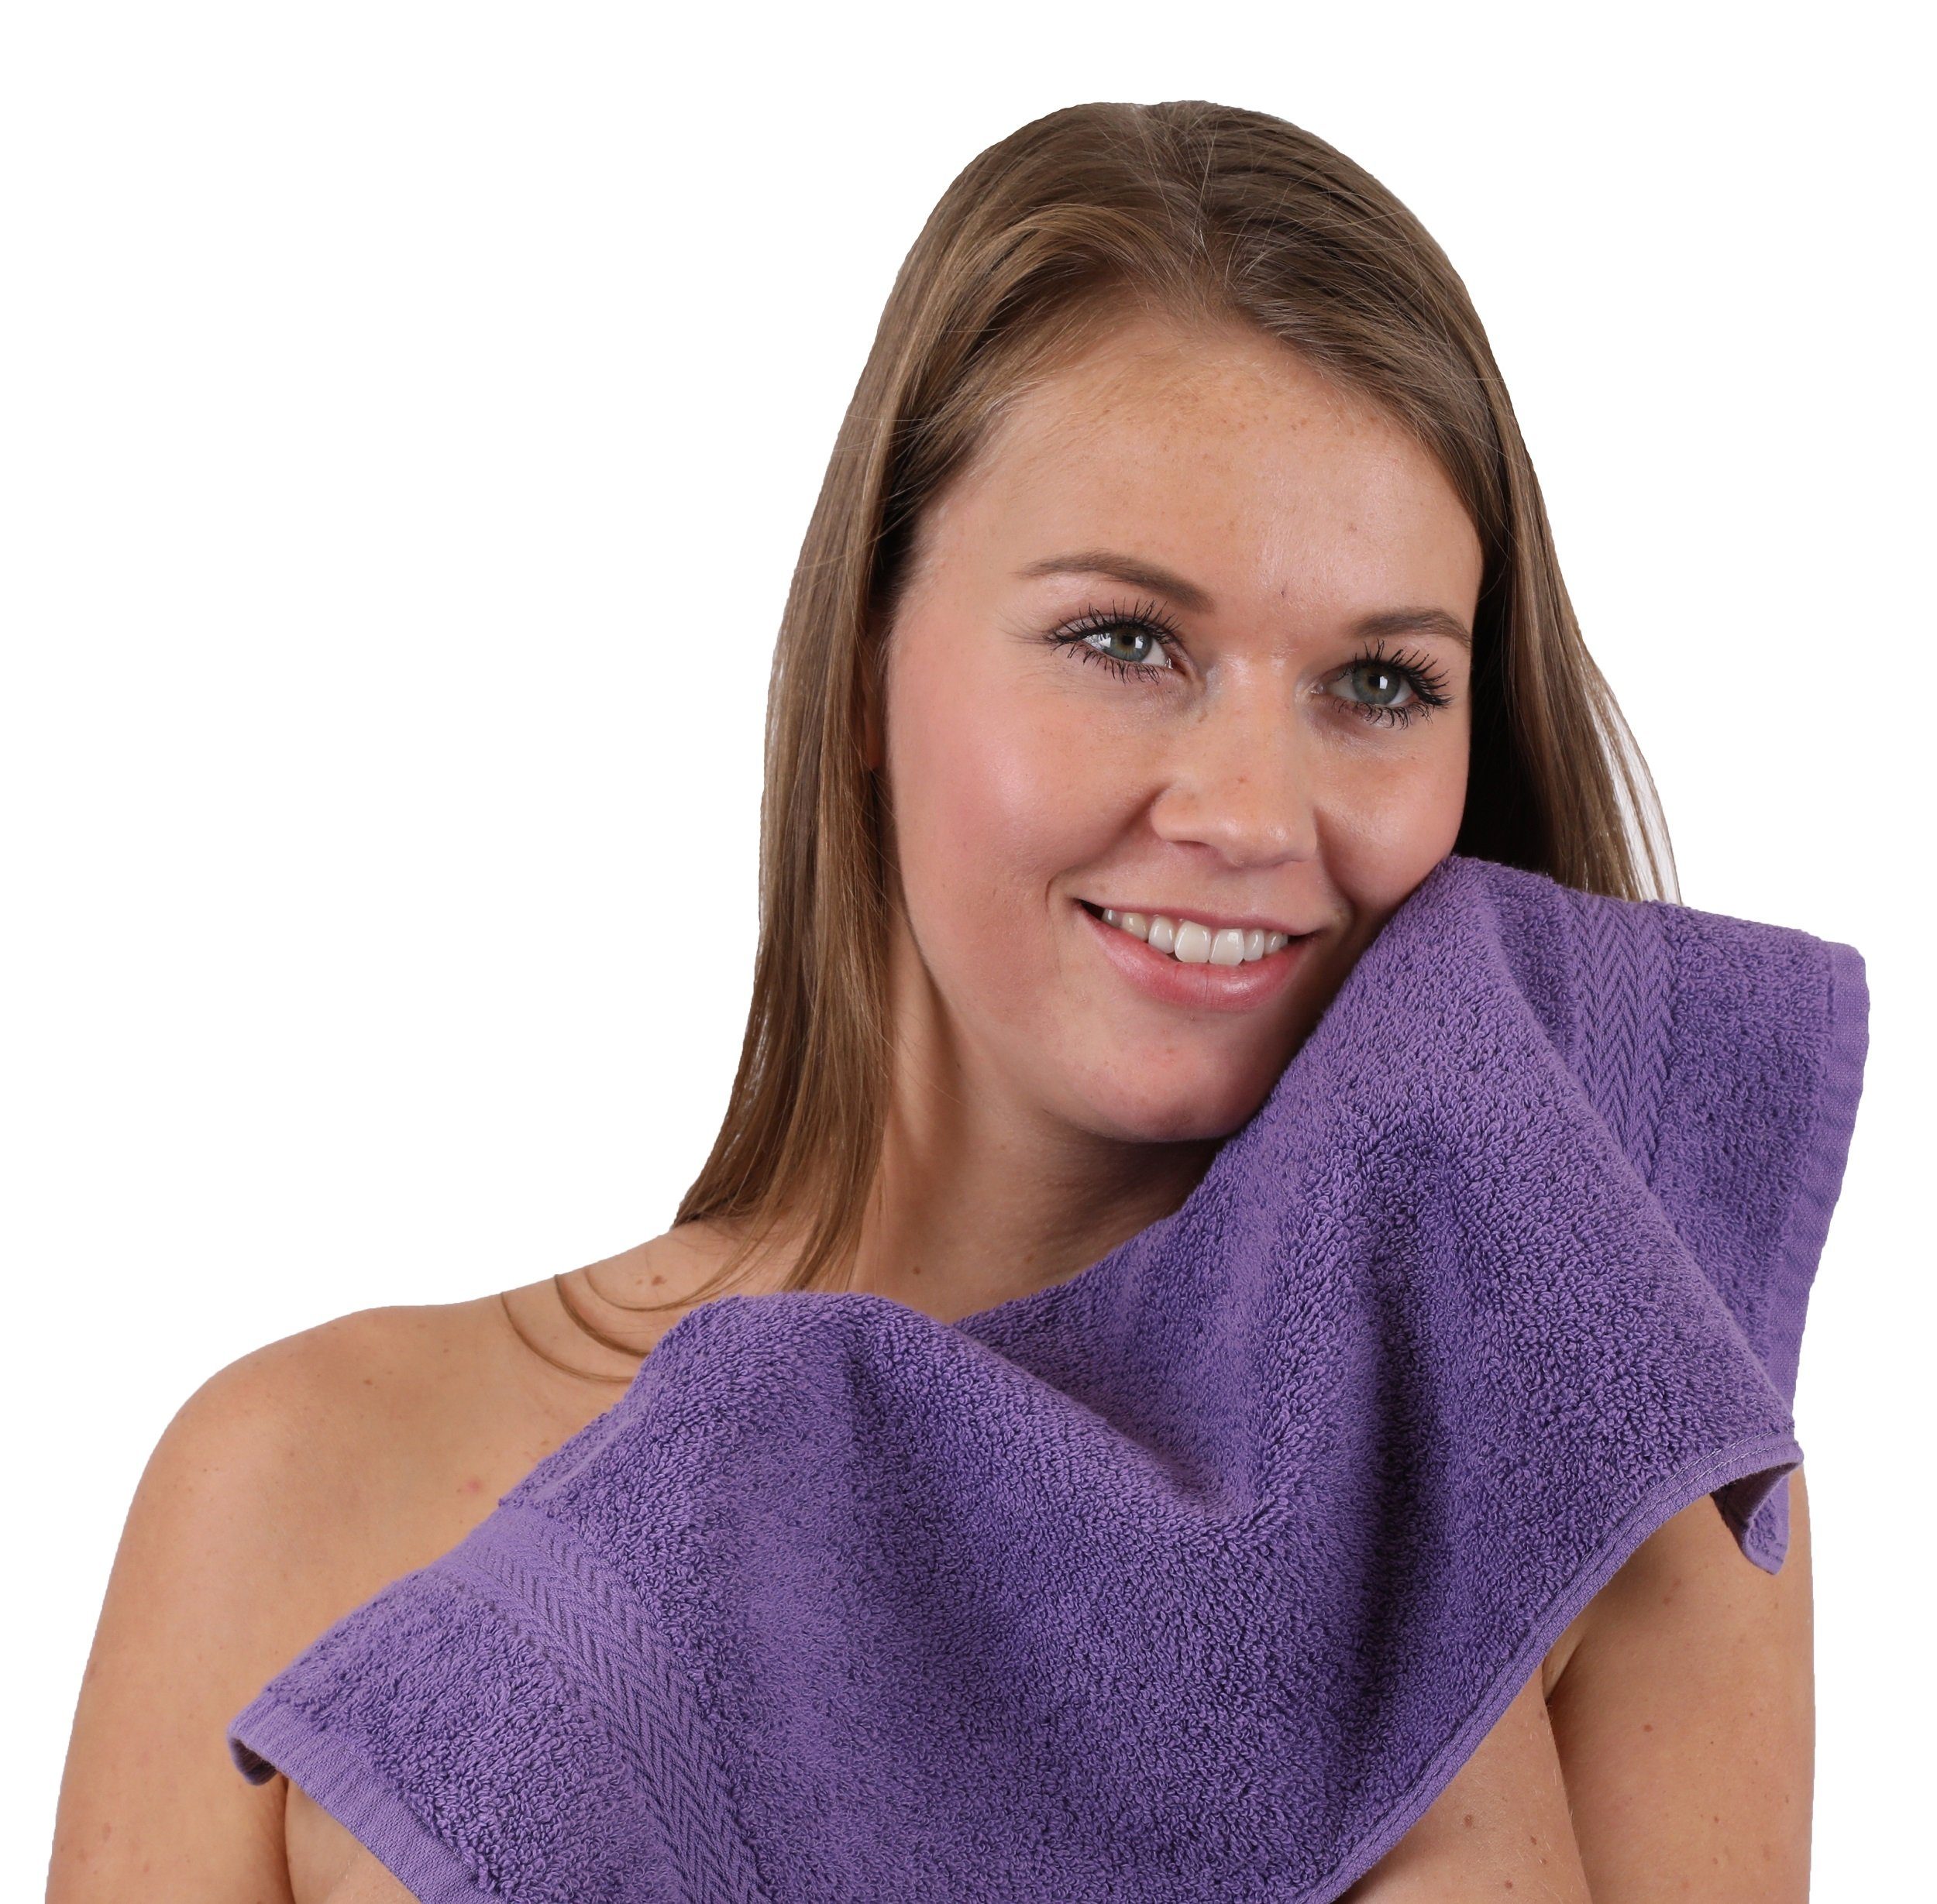 Betz Handtuch Set Handtuch-Set und Farbe 100% Baumwolle Classic 10-TLG. anthrazit, lila